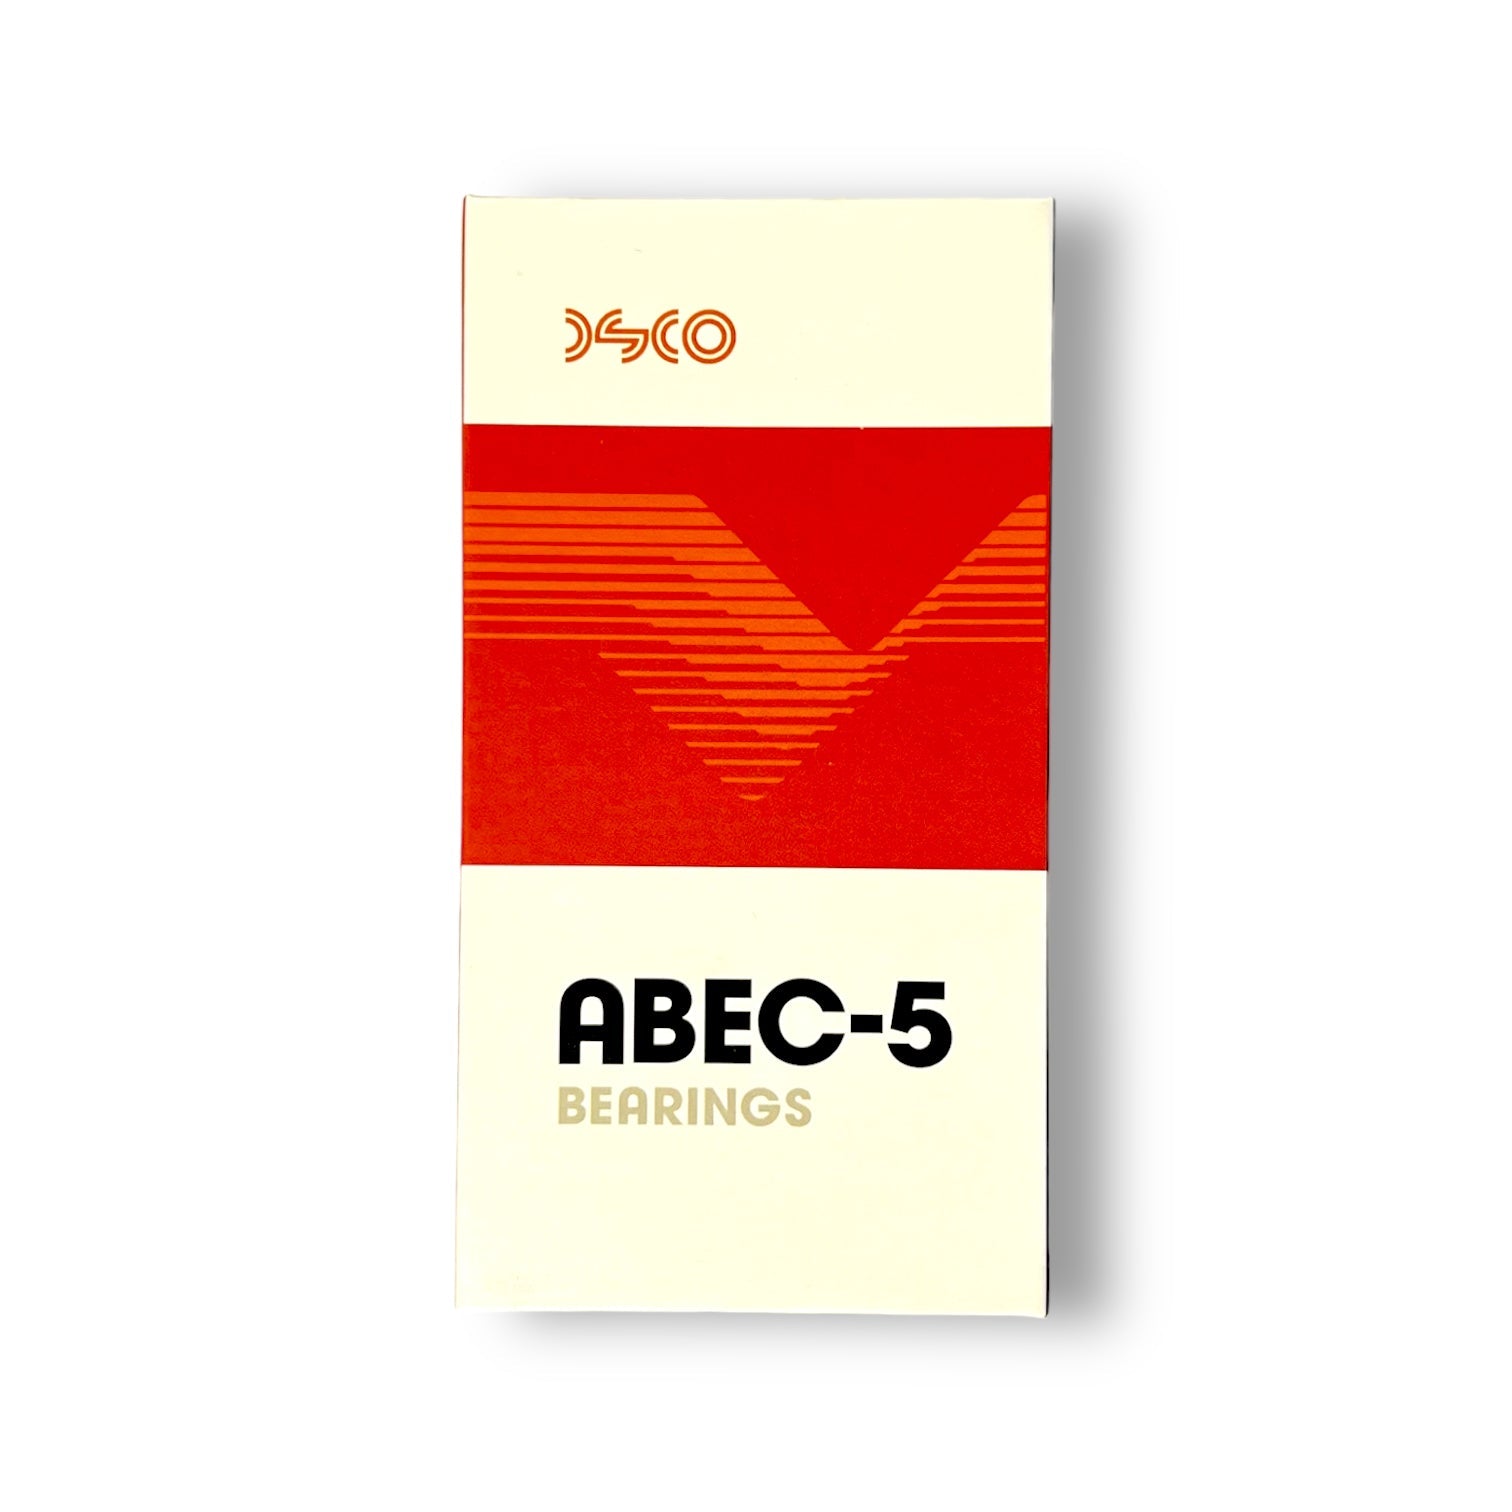 DSCO Bearings Abec 5